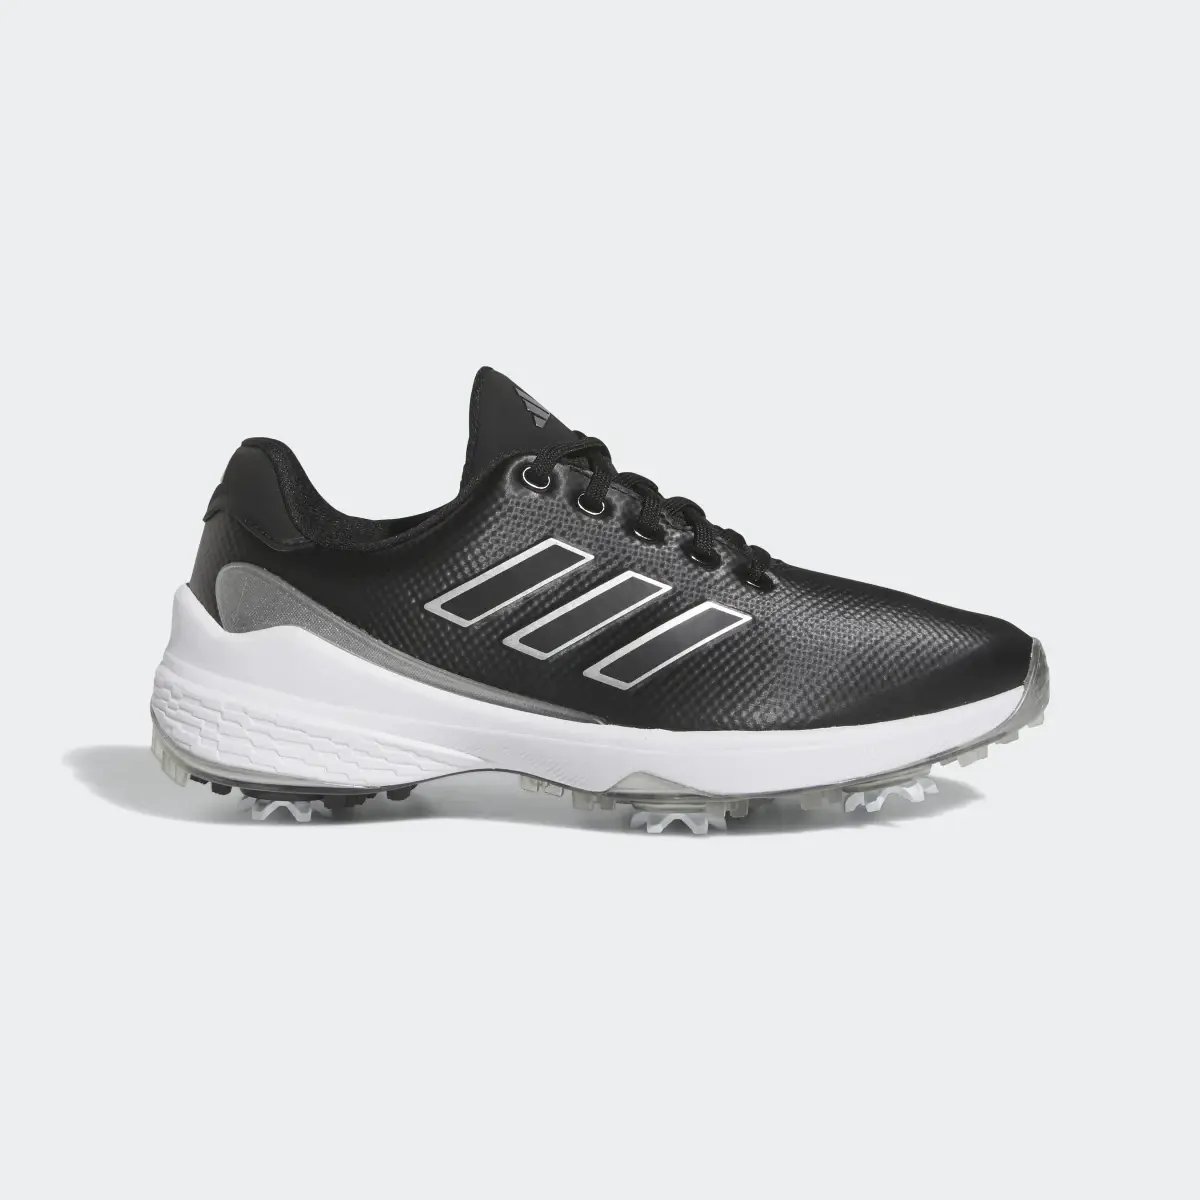 Adidas ZG23 Golf Shoes. 2